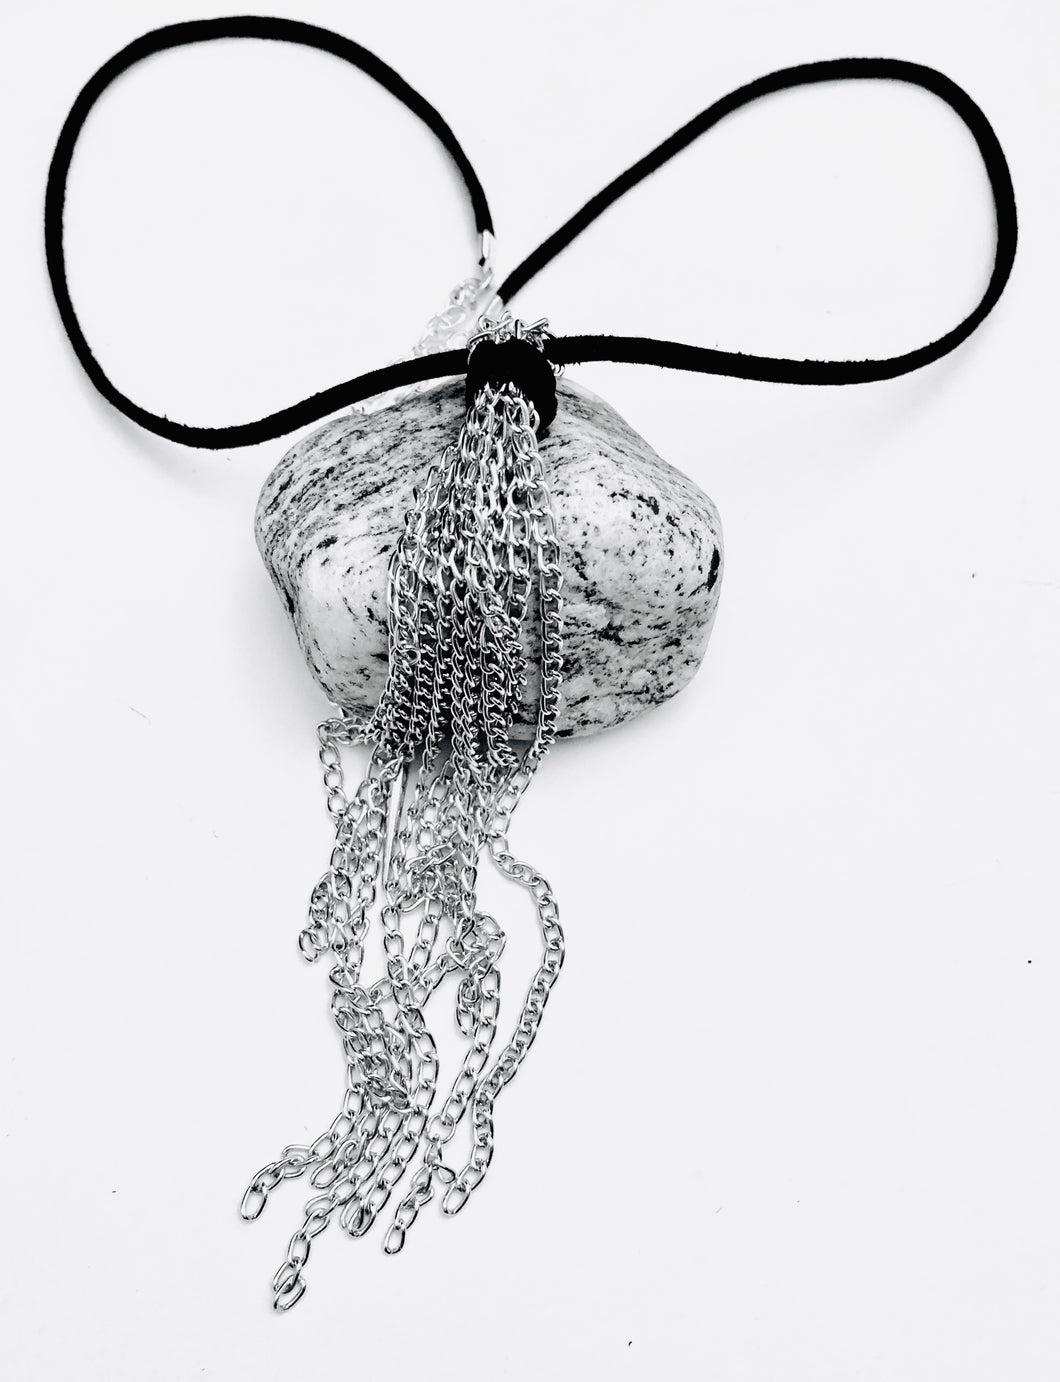 Chain Tassel Necklace